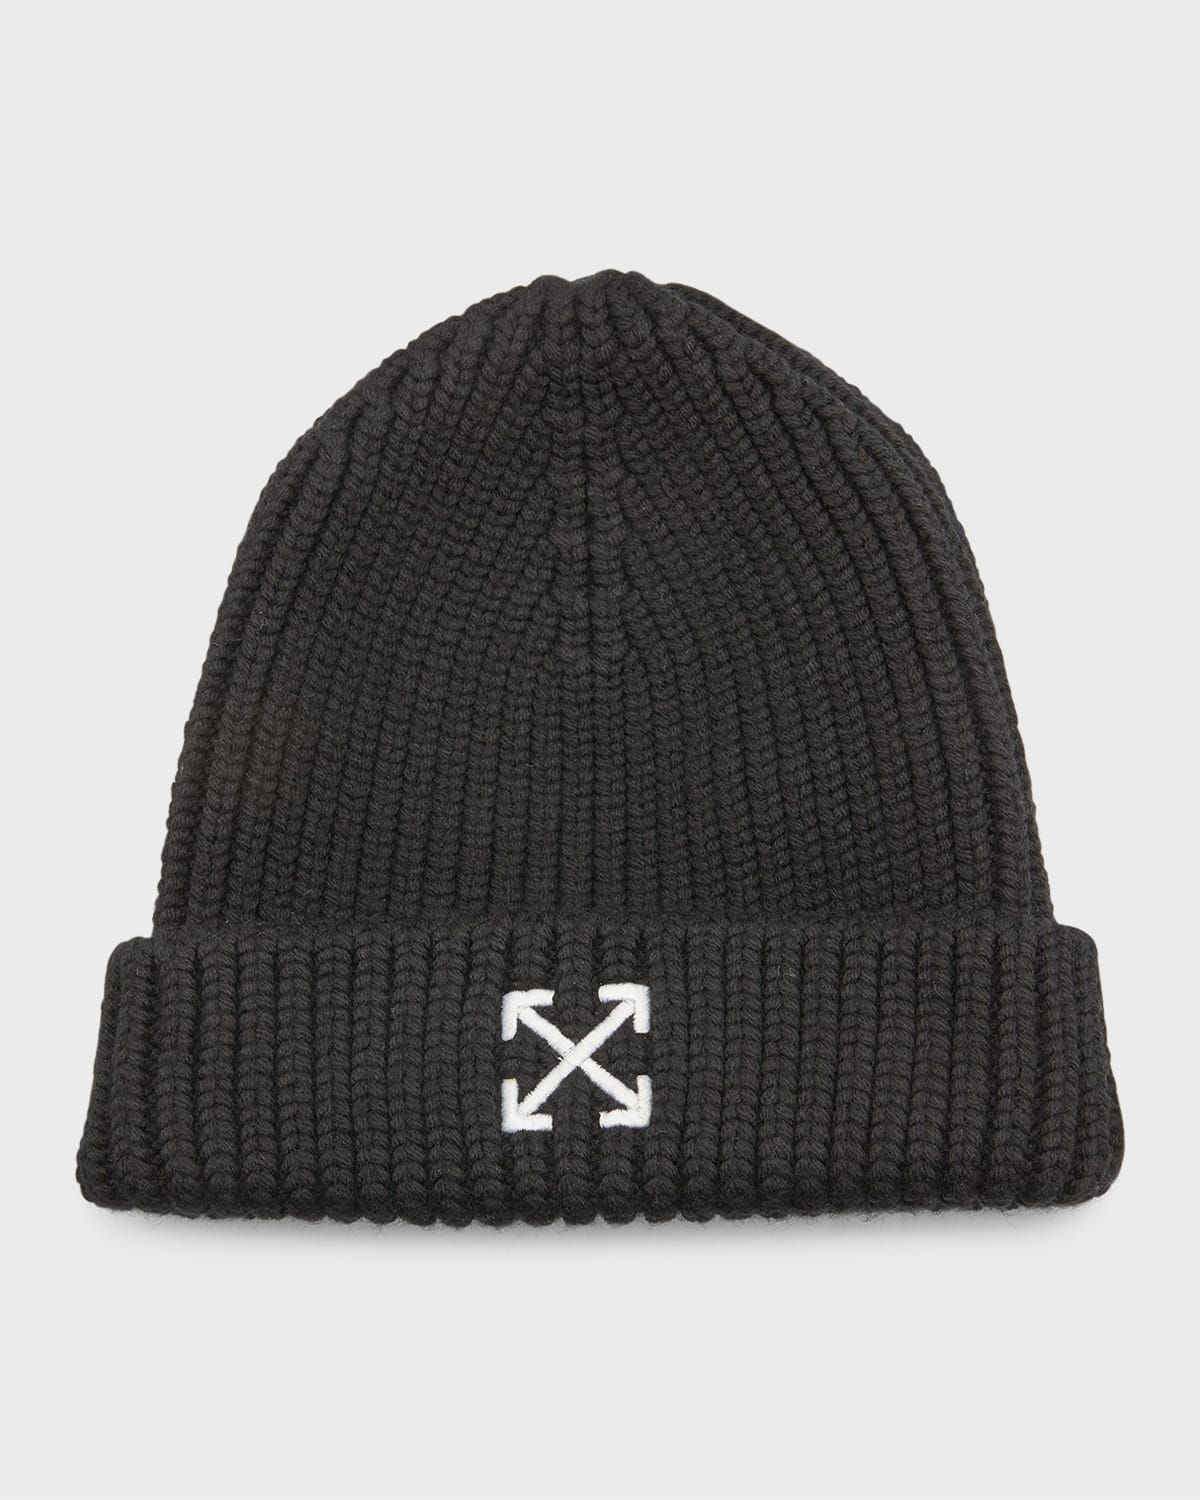 Wool Knit Hat | Neiman Marcus